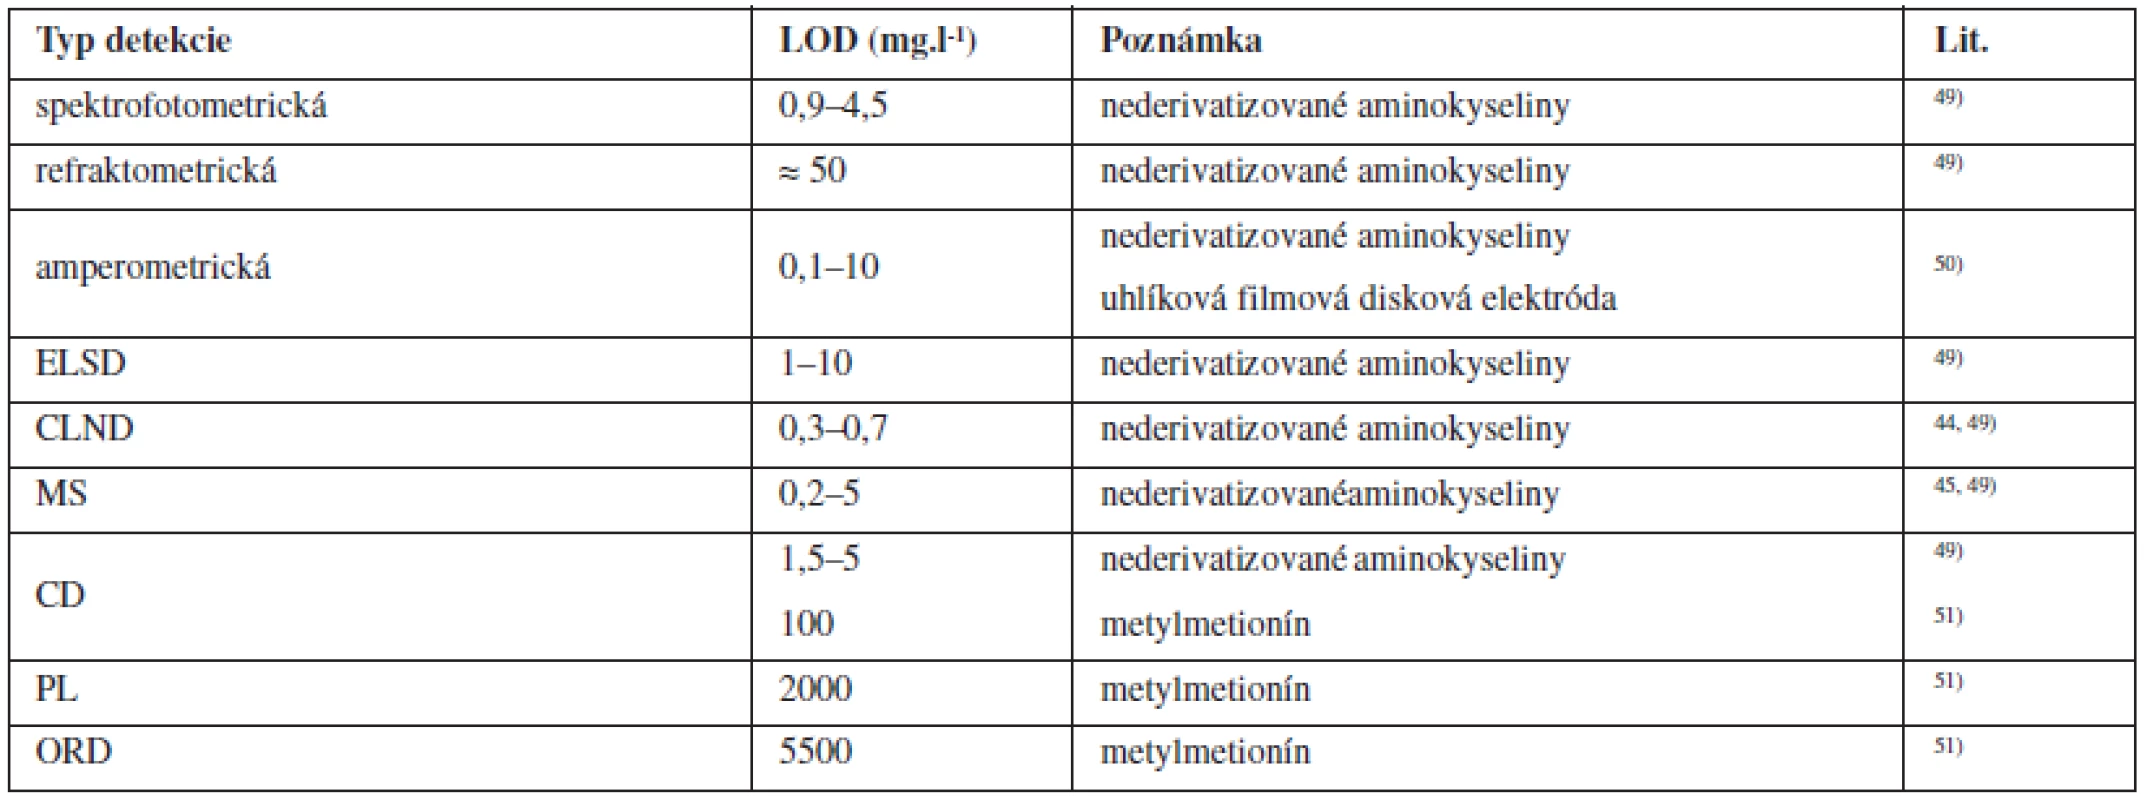 Porovnanie rozsahov LOD nederivatizovaných aminokyselín pre vybrané typy detektorov použivaných pri HPLC separáciích